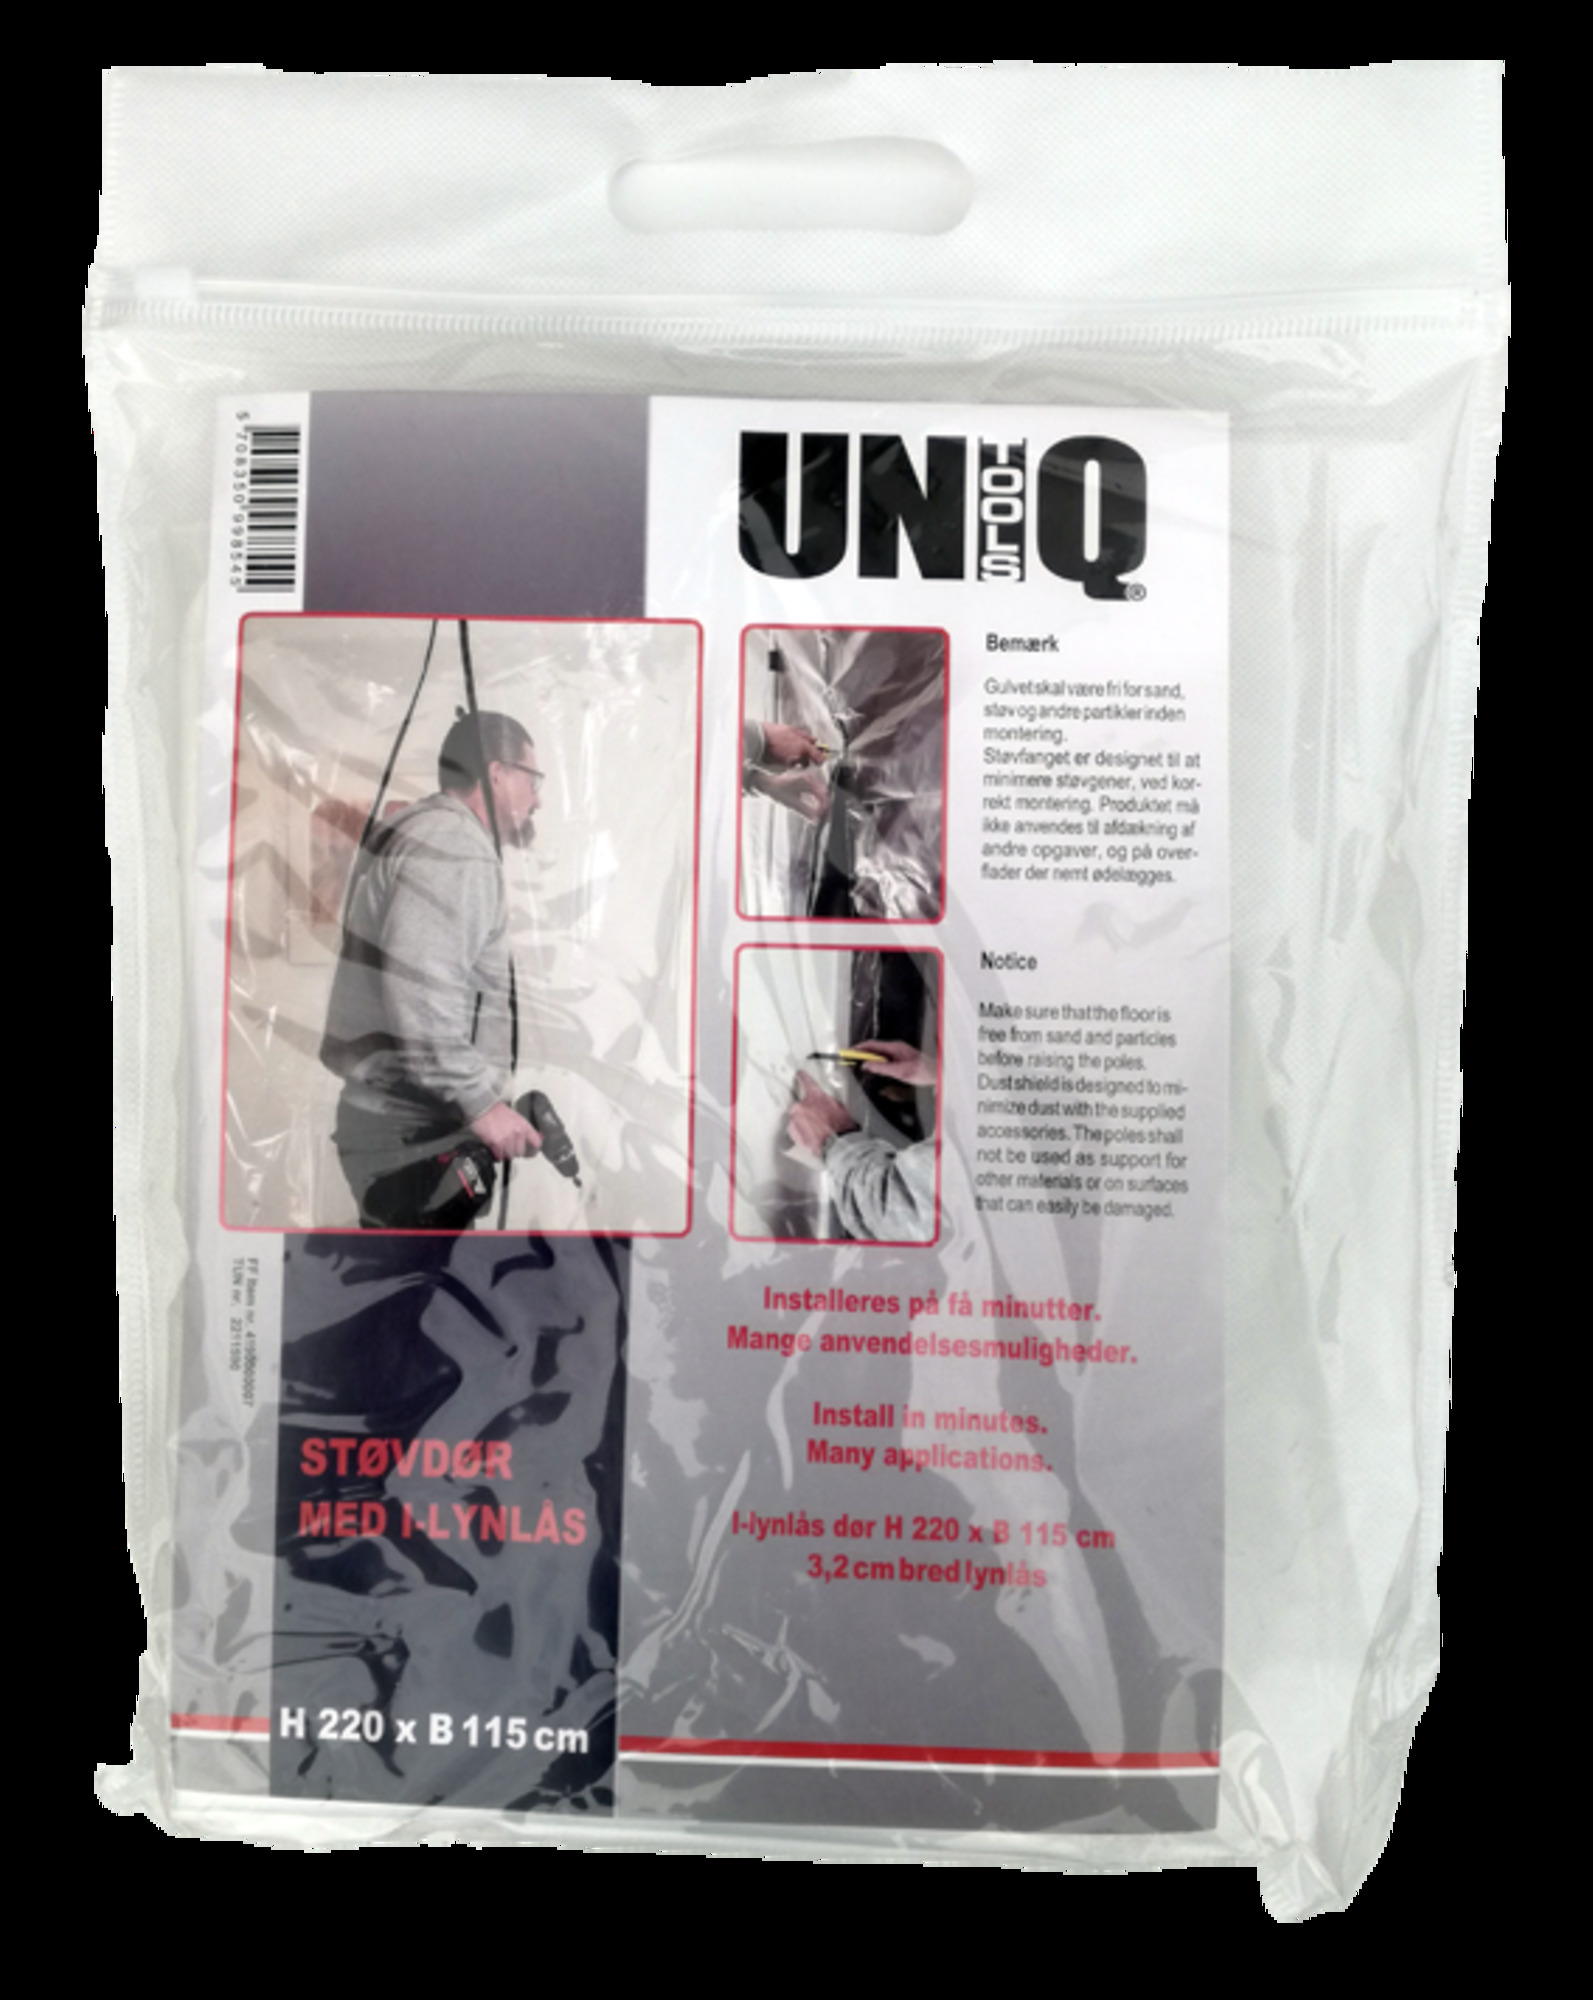 UNIQ Cover Støvdør m/I-lynlås 220x115cm | Ras